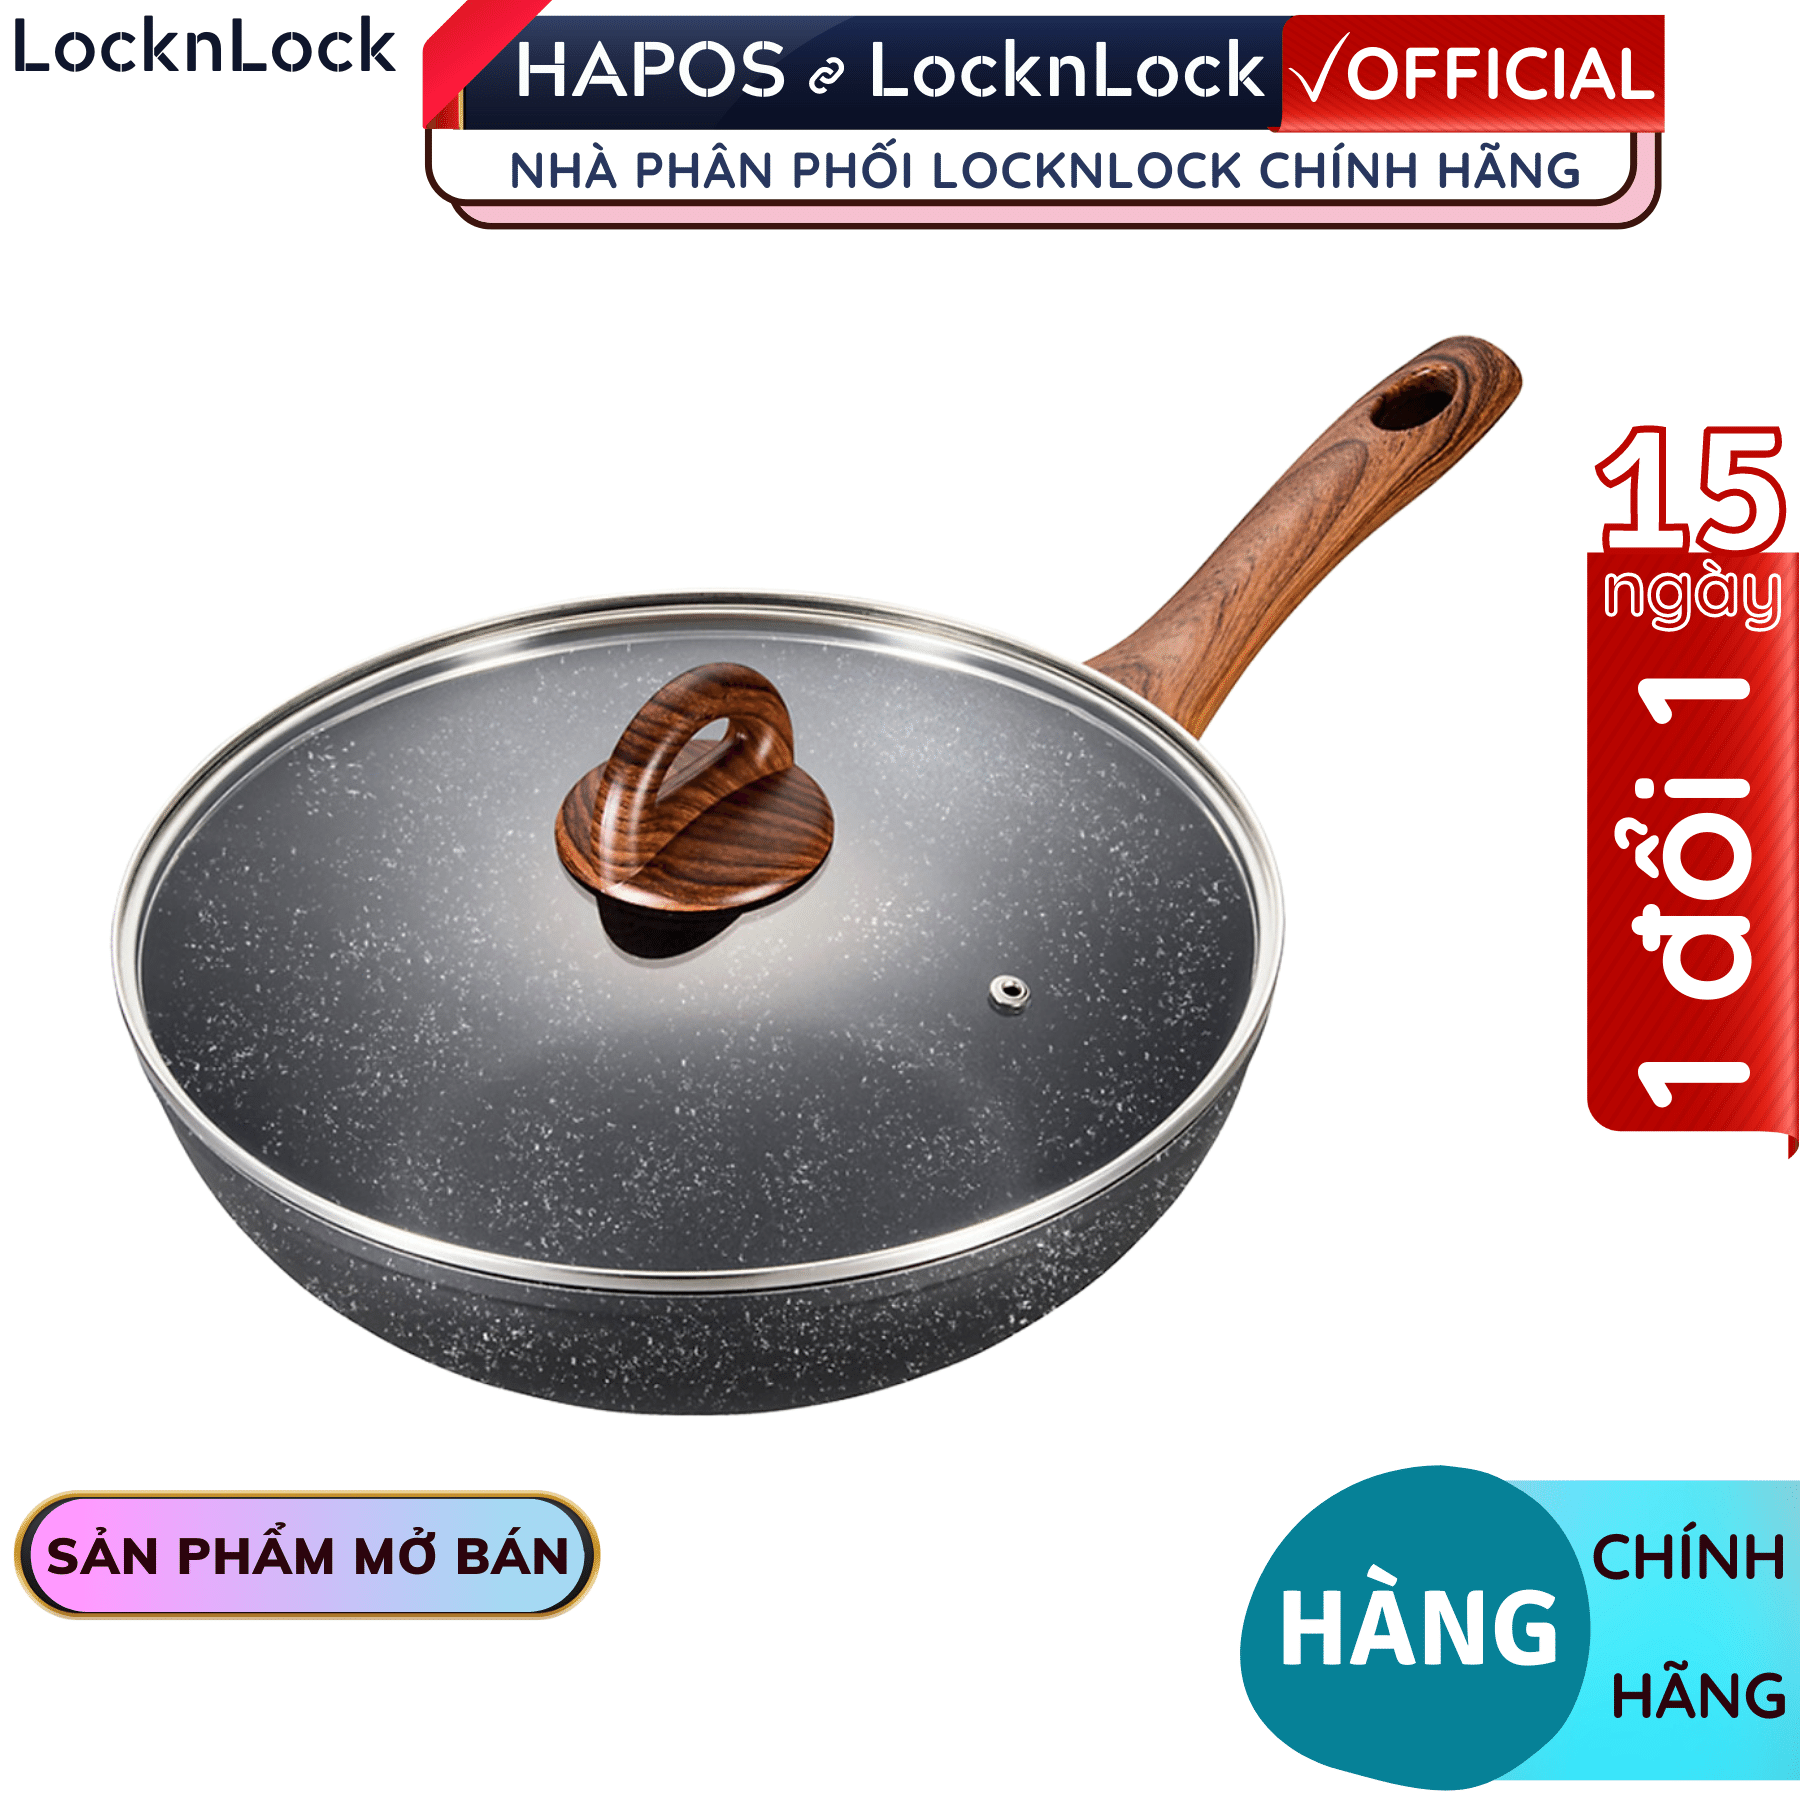 Chảo Lock&amp;Lock sâu lòng chống dính bằng nhôm LBU1285 28cm - Hàng chính hãng, nắp thủy tinh, dùng được bếp từ - Hapos